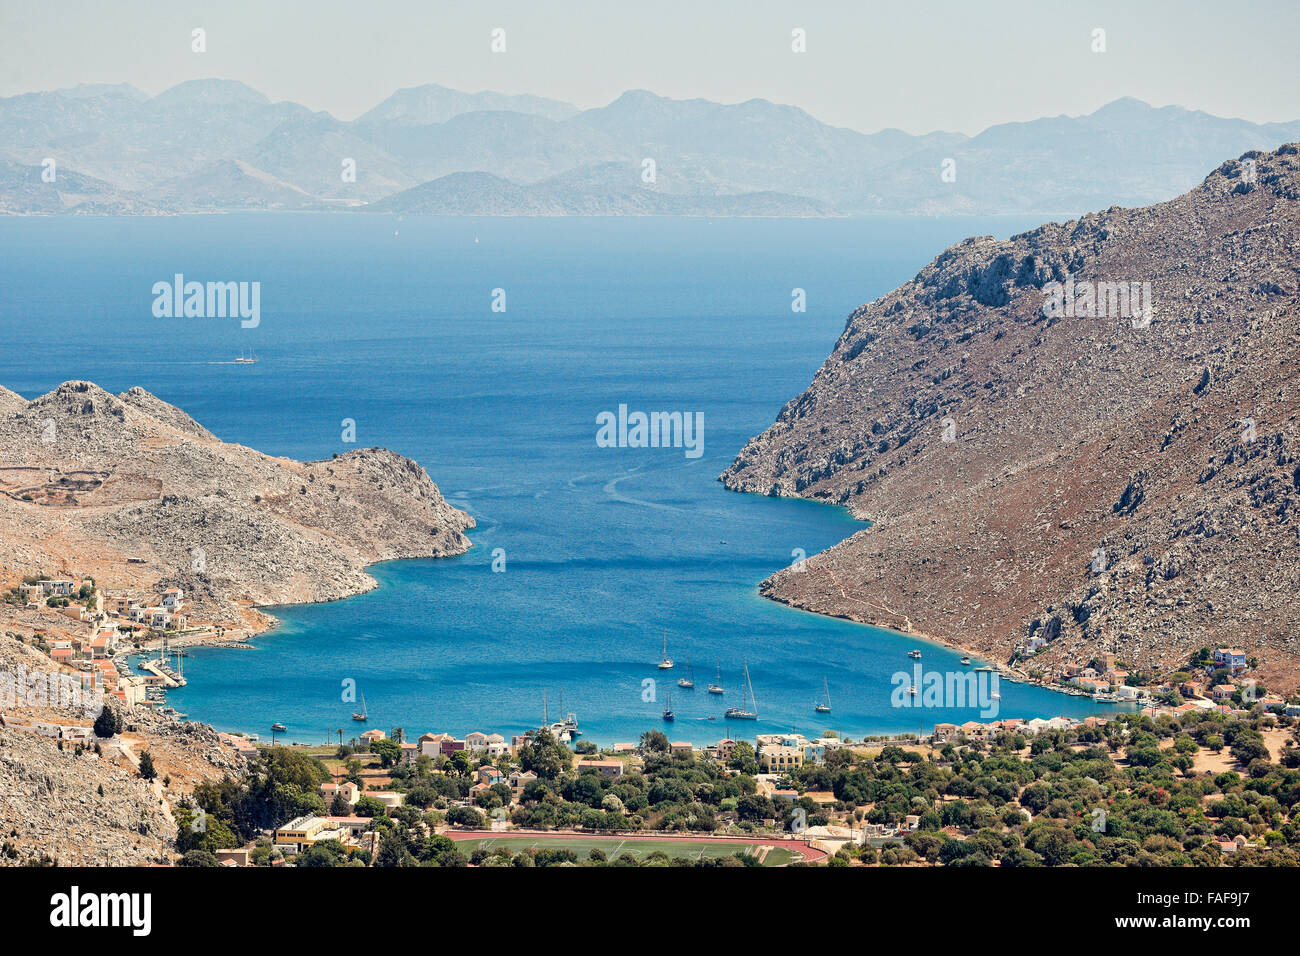 La baie de Pedi dans l'île de Symi, Grèce Banque D'Images